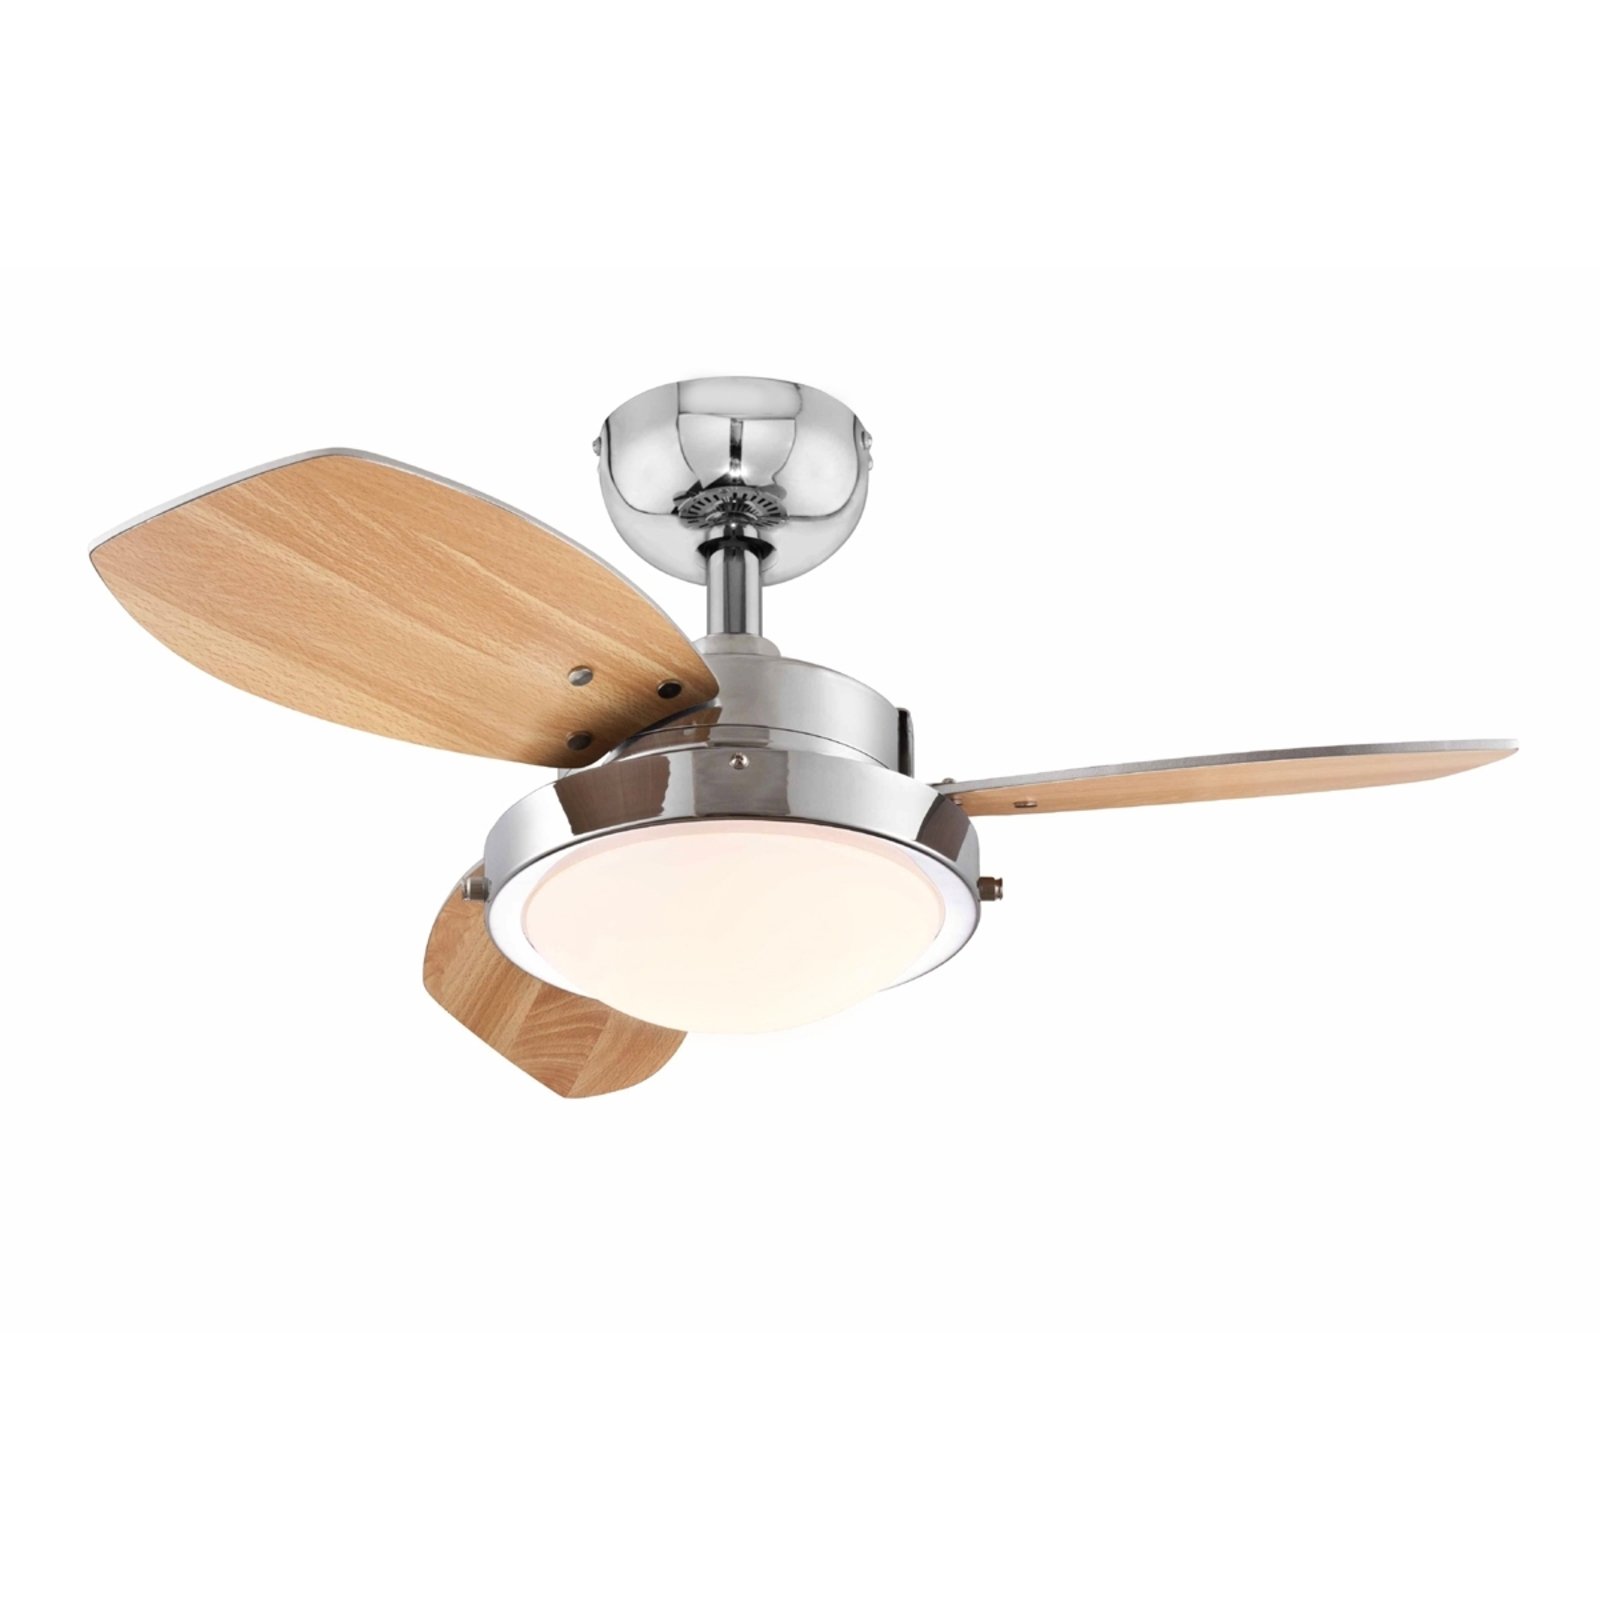 Westinghouse Wengue ceiling fan, E14 light